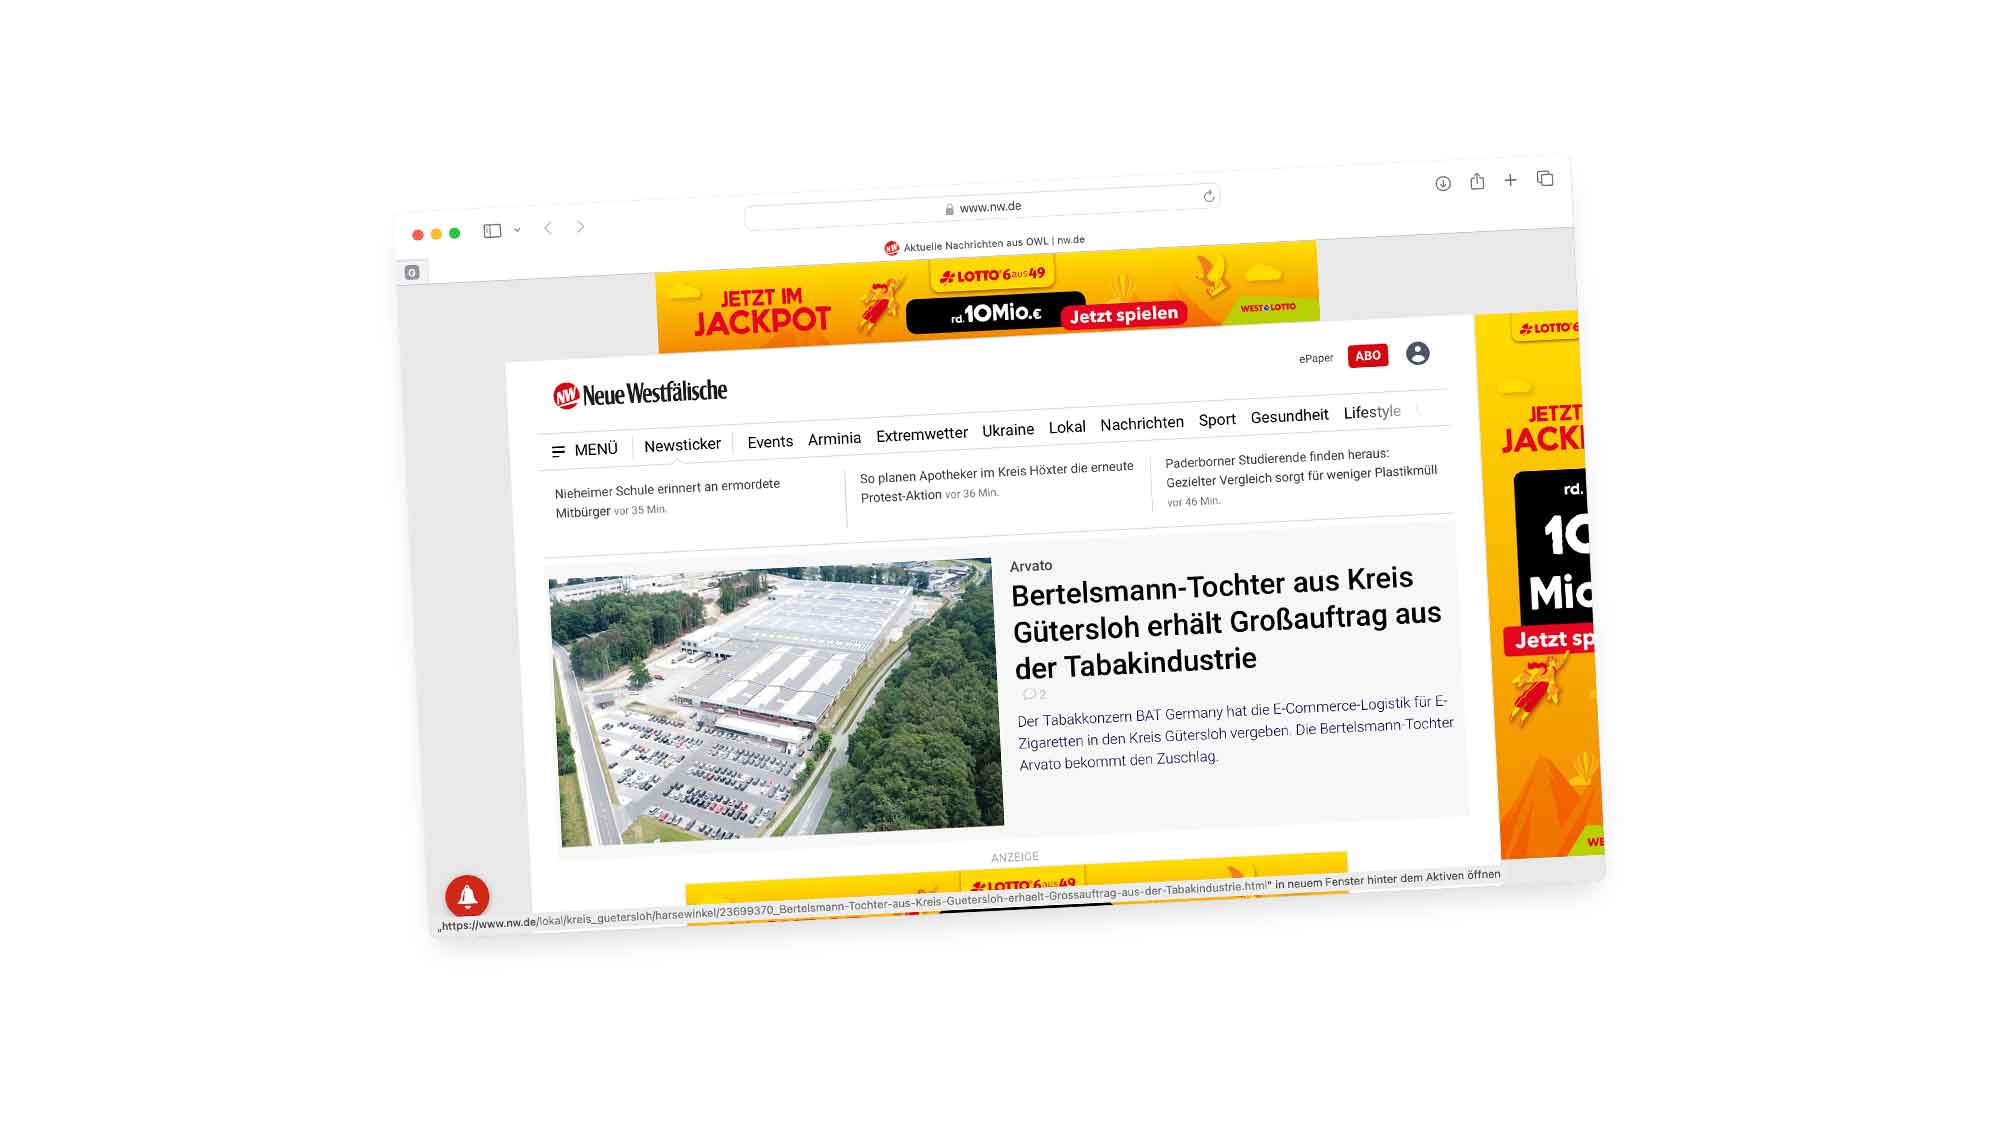 Arvato: Ber­tels­mann Toch­ter aus Kreis Gütersloh erhält Großauftrag aus der Ta­bak­in­dus­trie